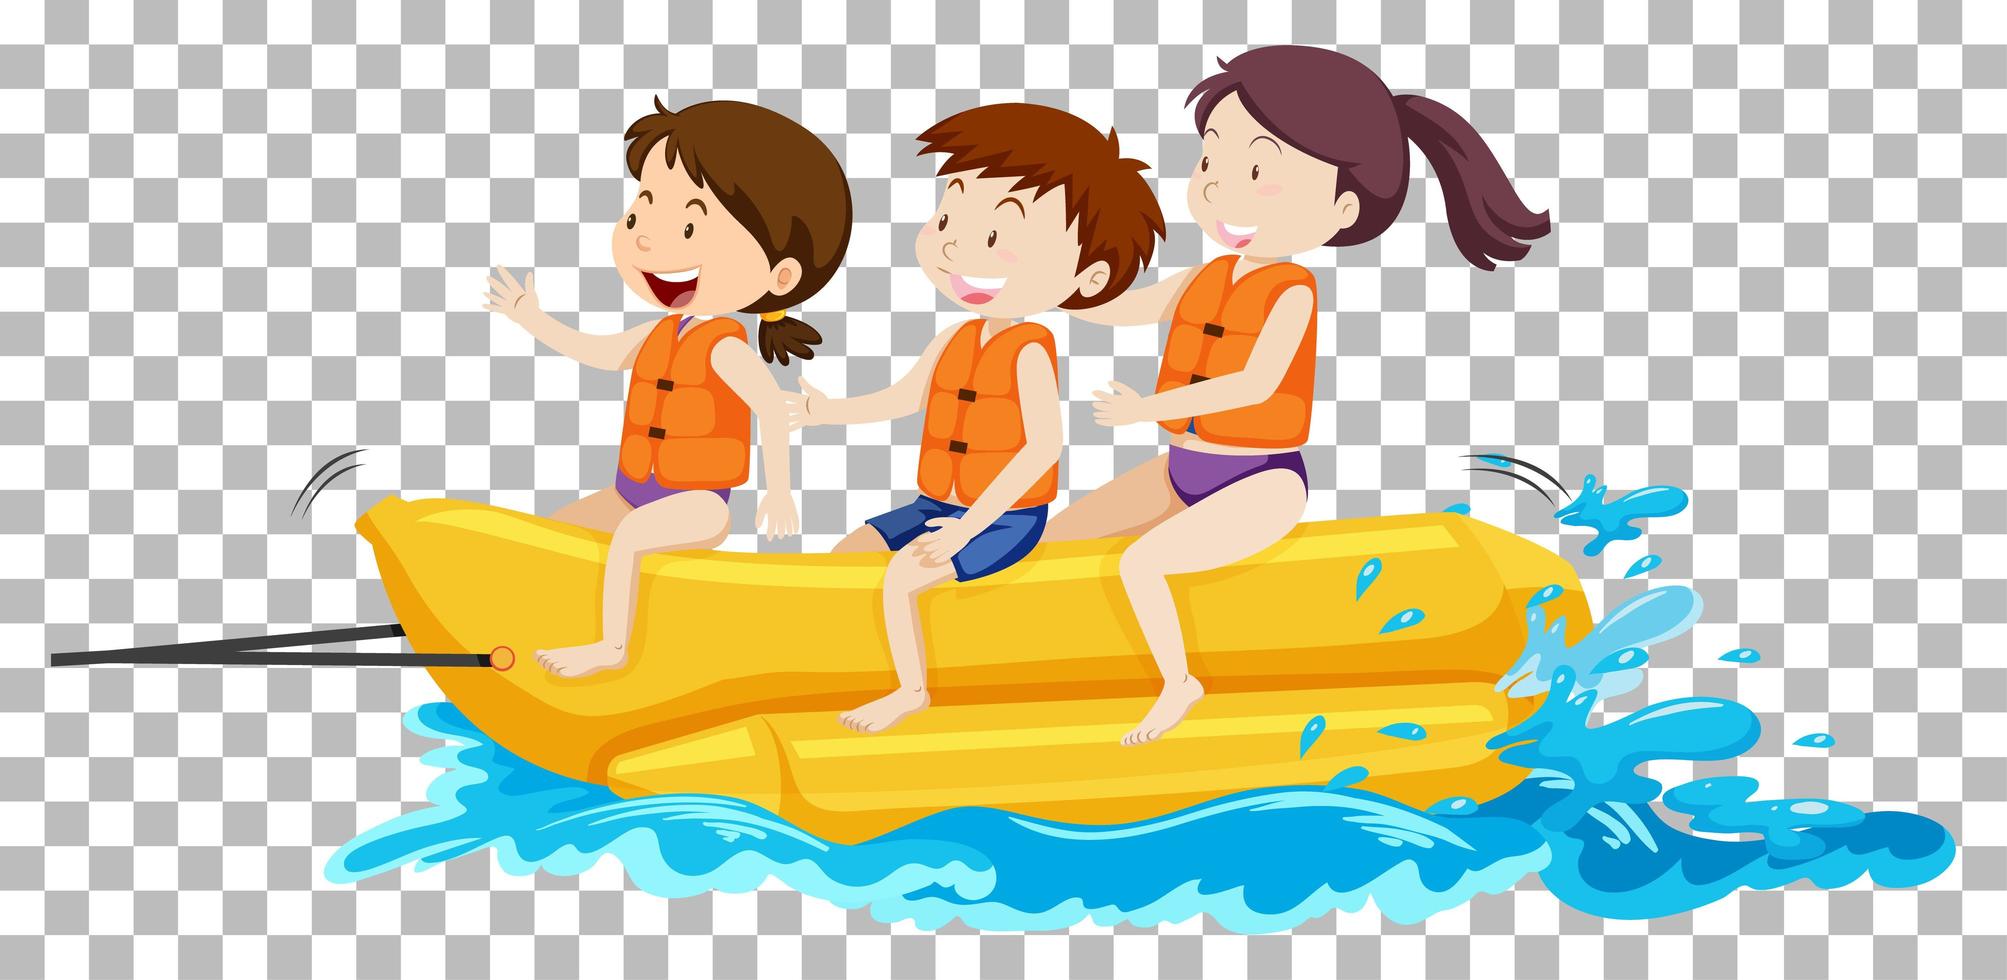 Children on the banana boat vector